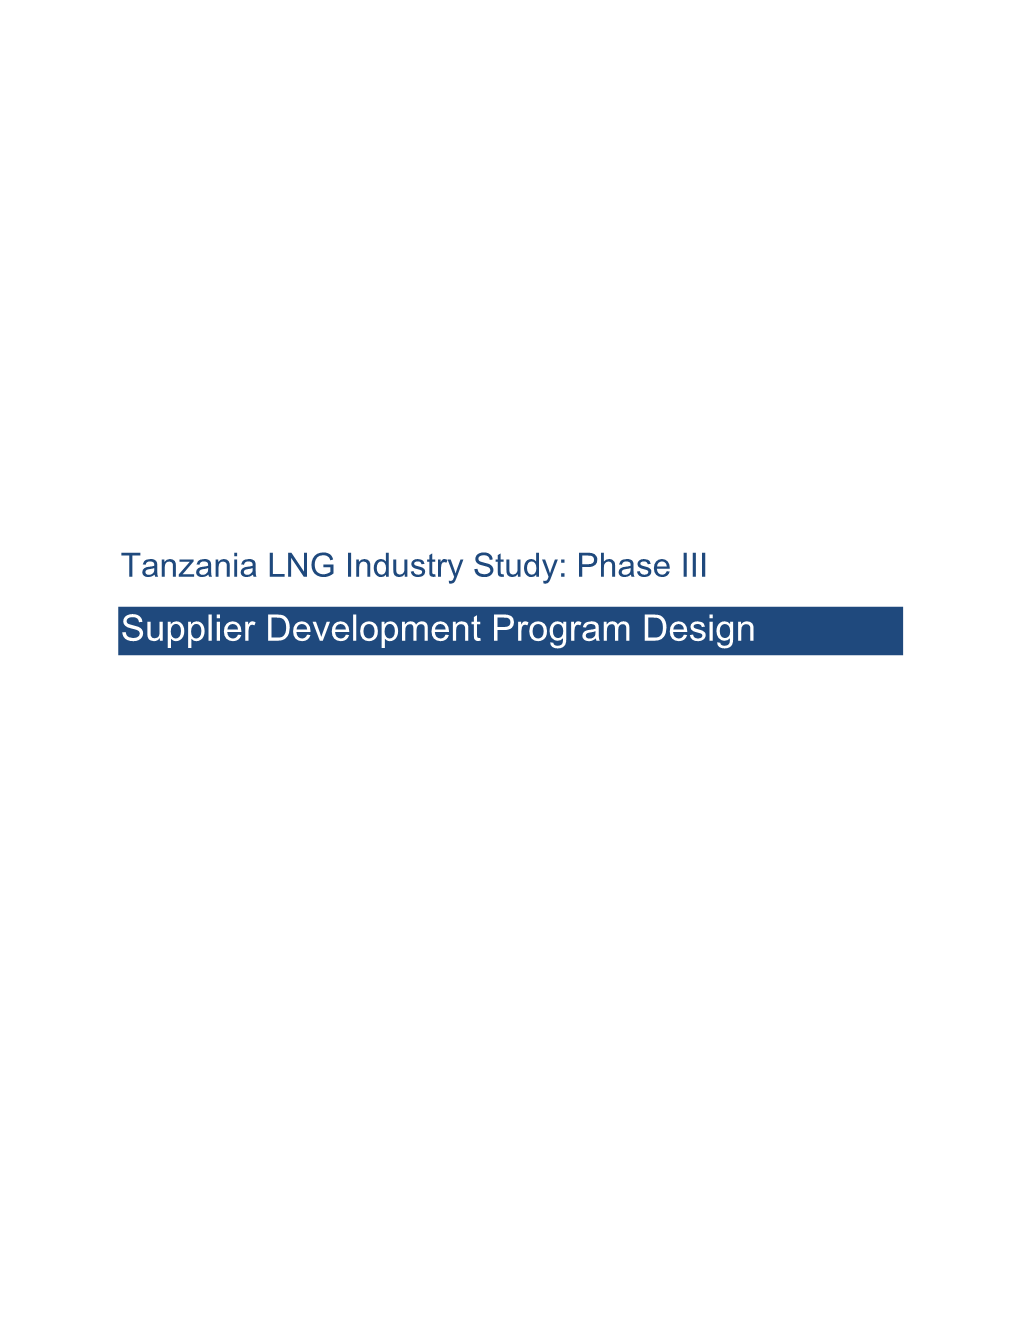 Phase III Supplier Development Program Design